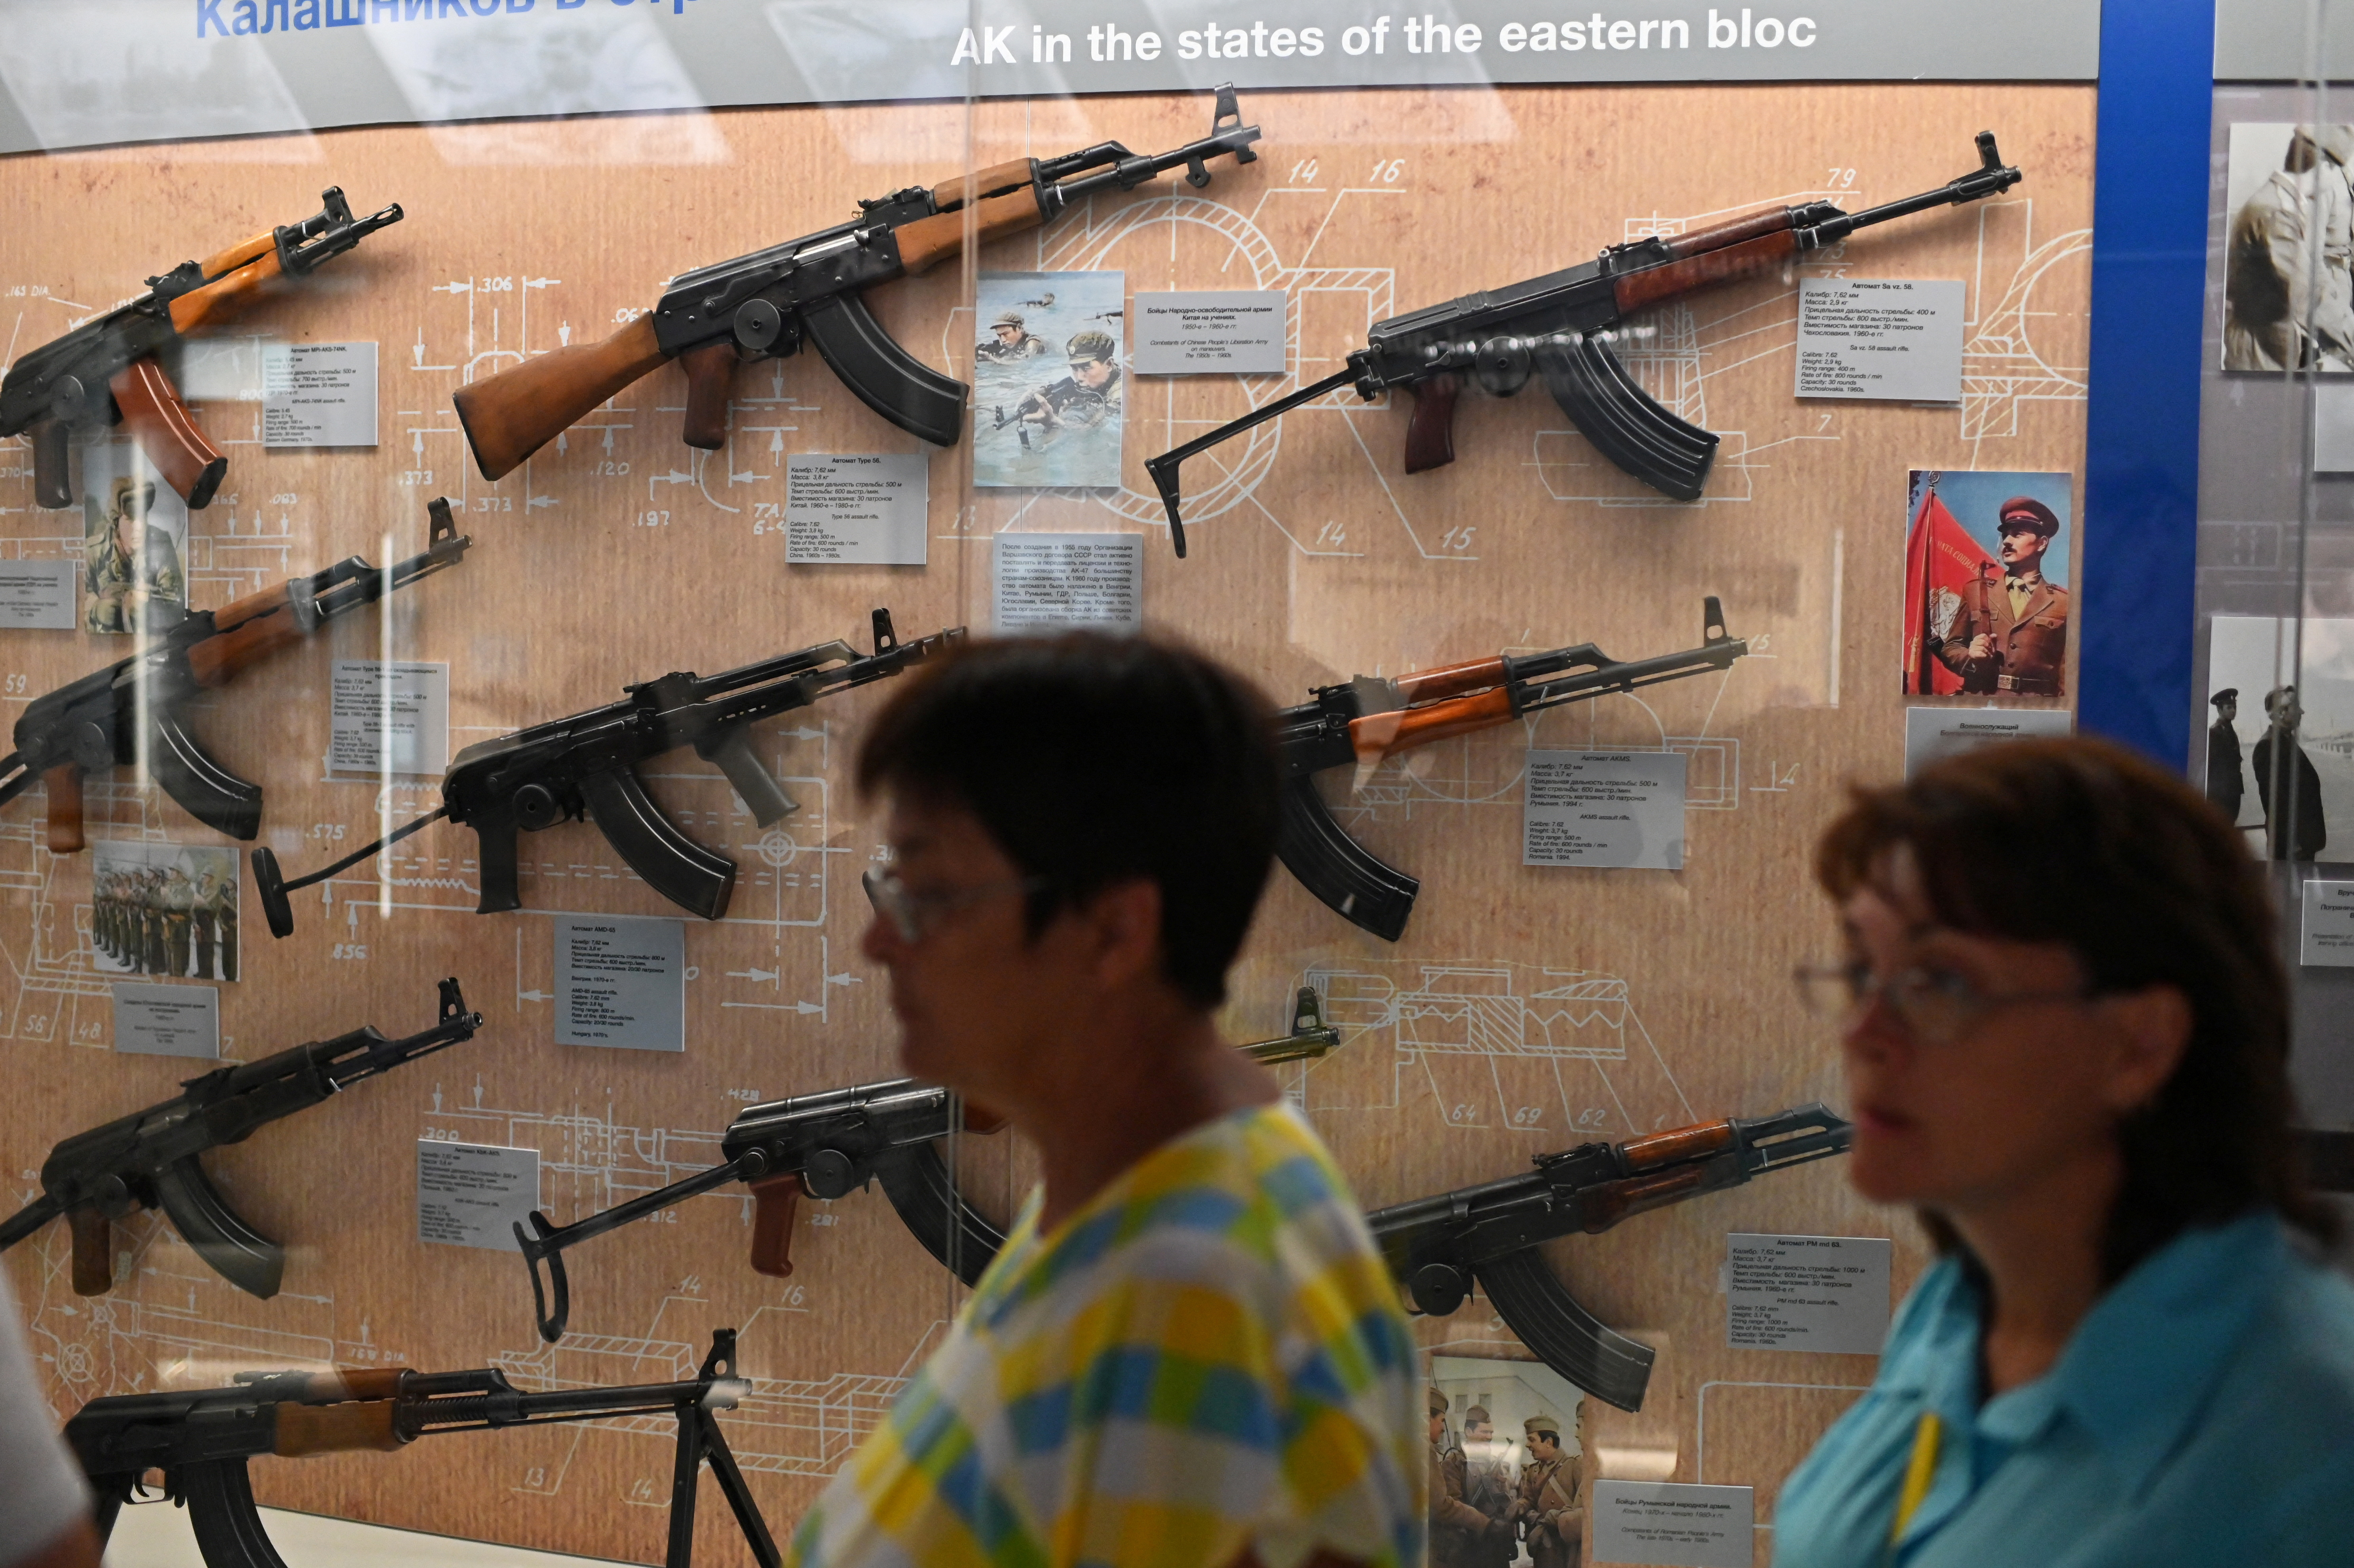 El Museo y complejo de exposiciones Kalashnikov en la ciudad de Izhevsk, Rusia, 20 de agosto de 2022. (REUTERS/Alexey Malgavko)